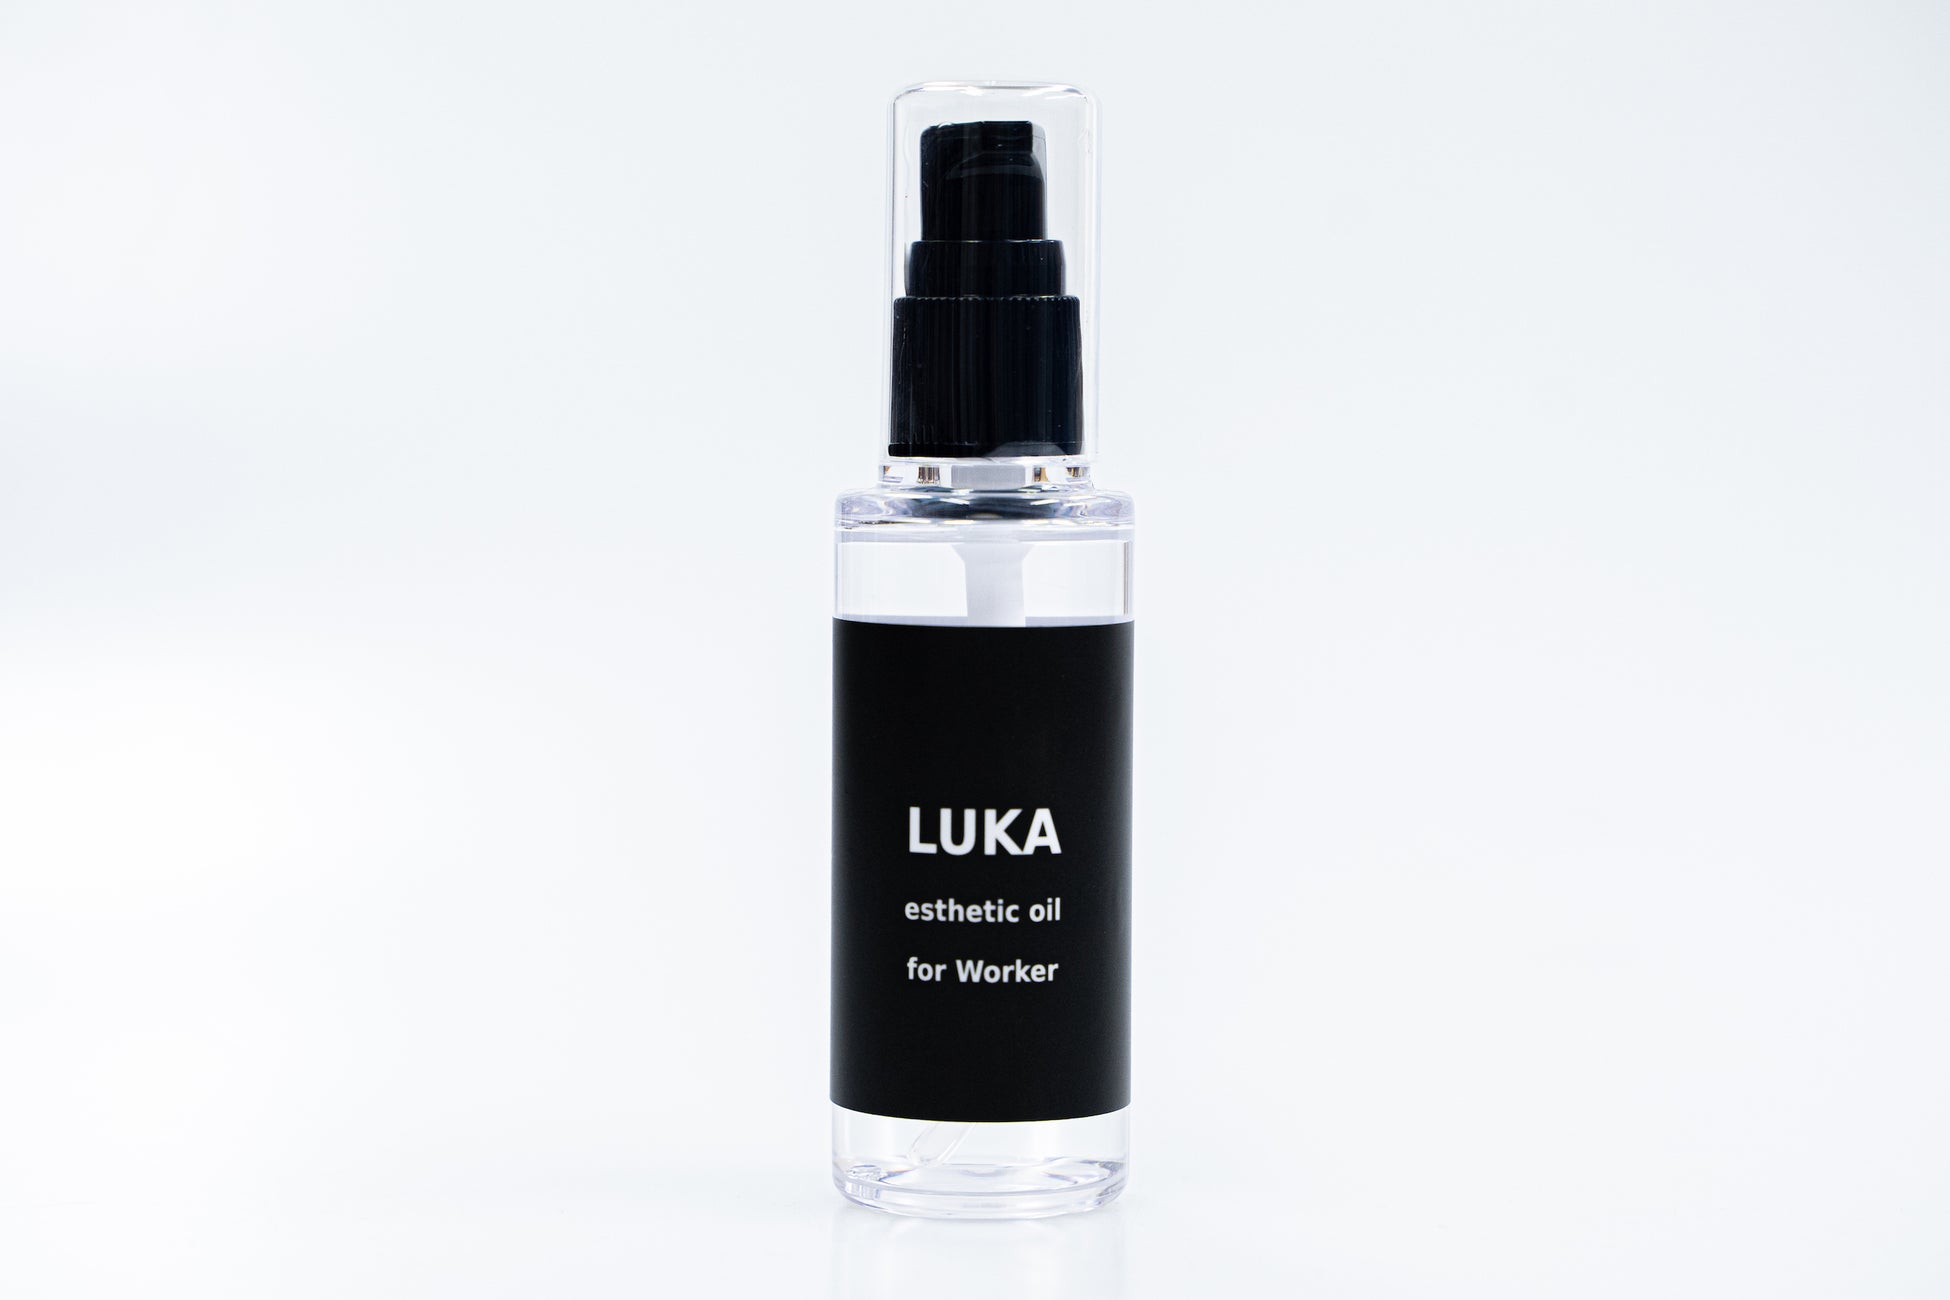 ミュージシャンの意見を元に作られたハンドオイル”LUKA / esthetic oil for Worker”が2022年8月11日に発売